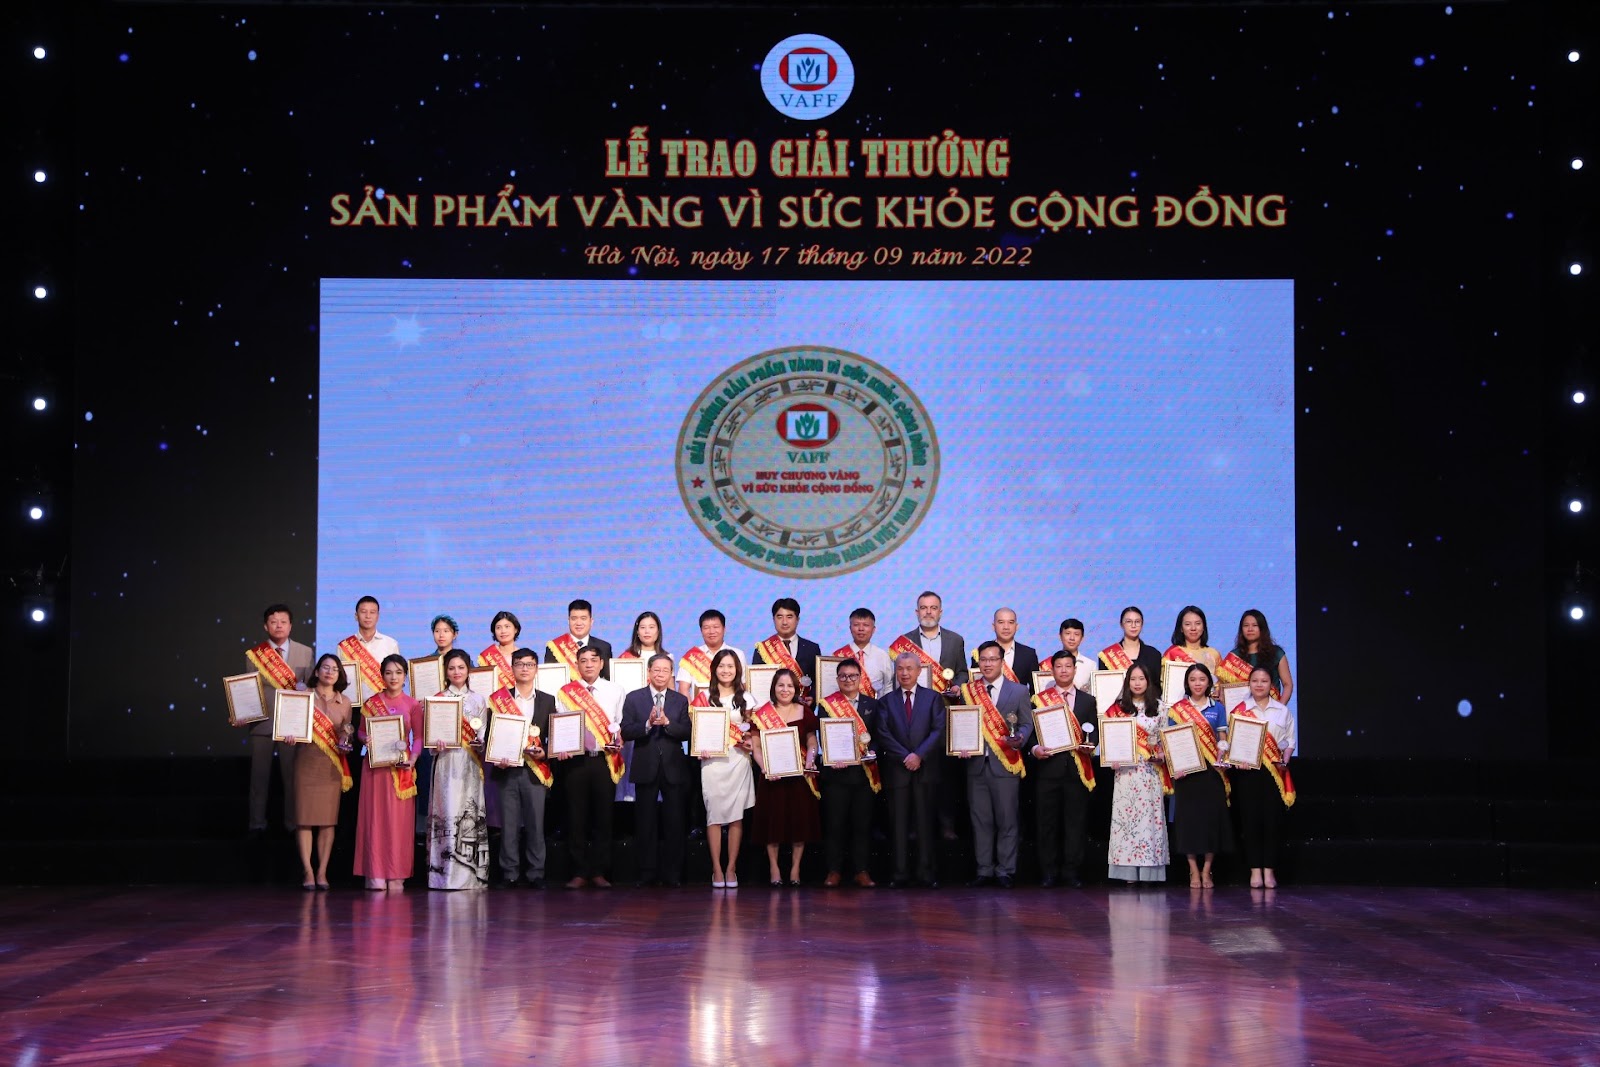 Bảo Khí Khang vinh dự nhận giải “Sản phẩm vàng vì sức khỏe cộng đồng” - 1